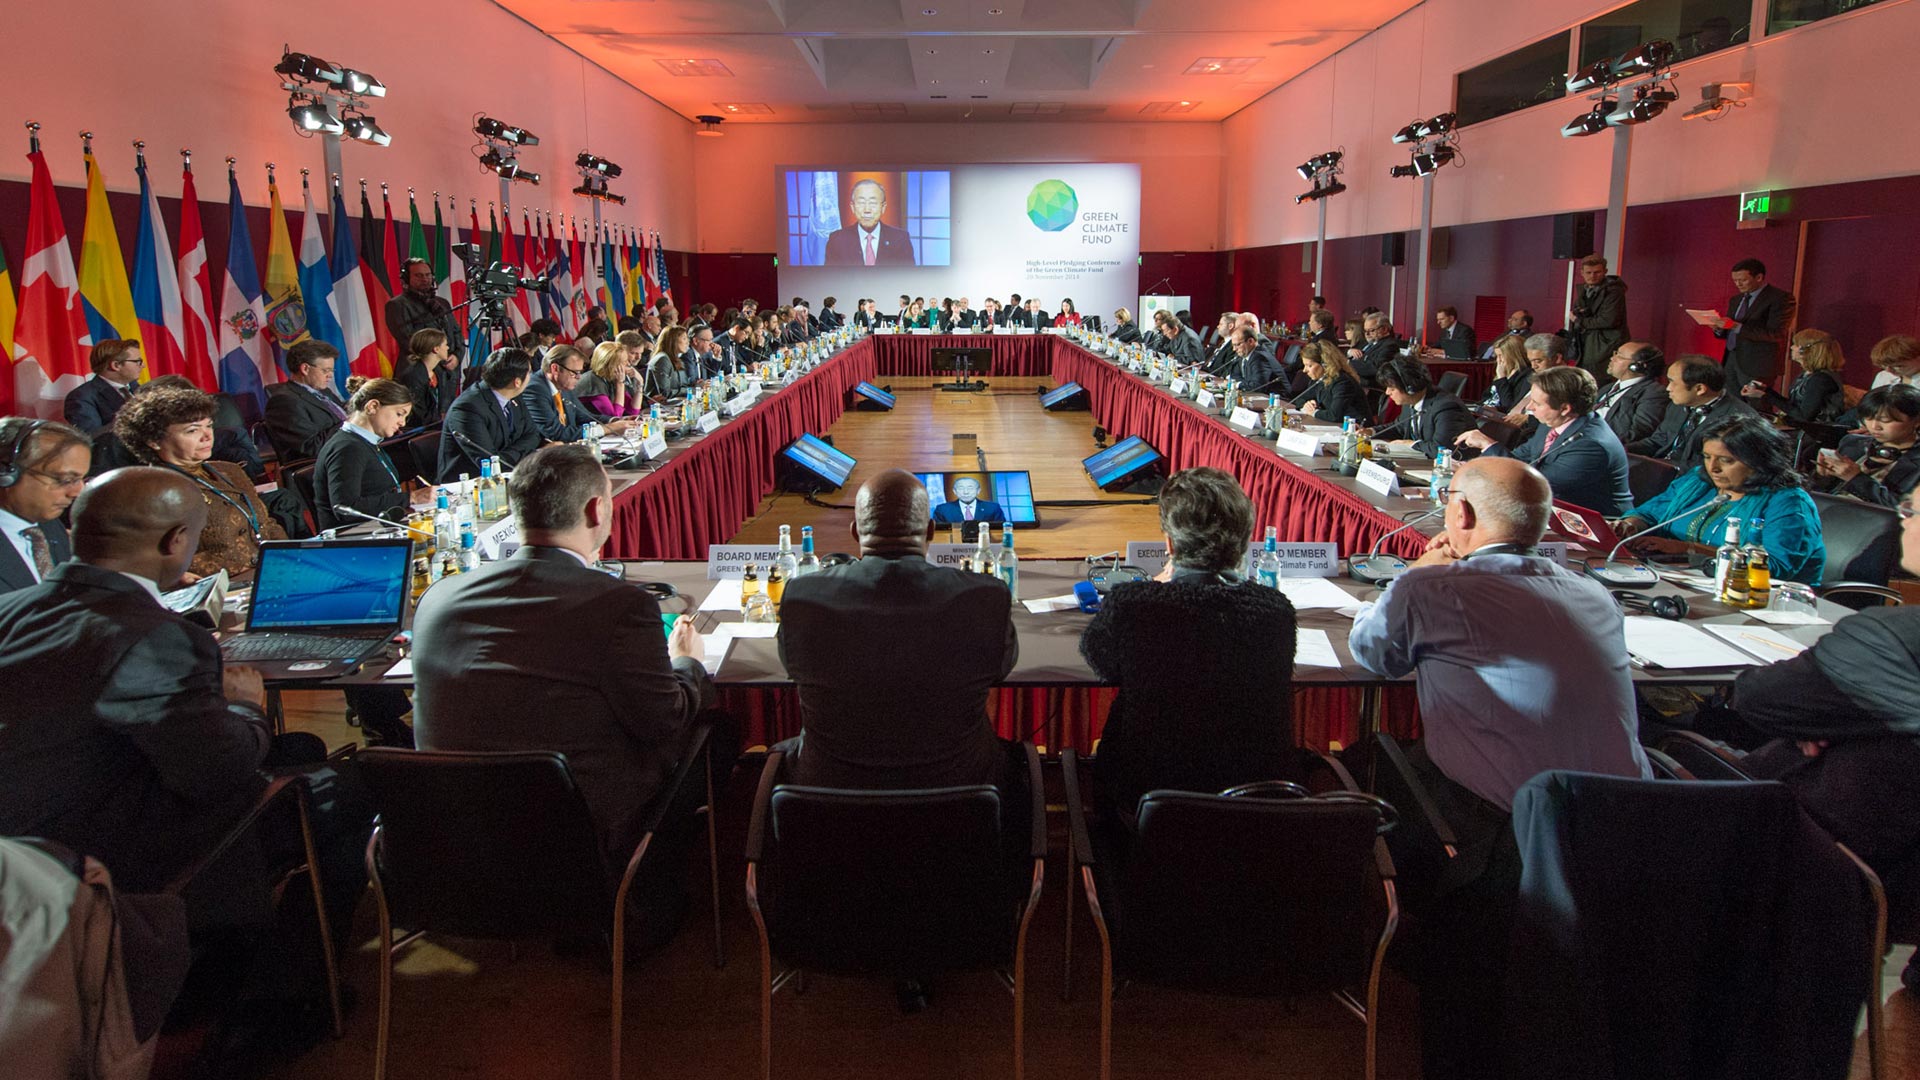 Sitzungssaal der internationalen Geberkonferenz des Grünen Klimafonds, deren Gastgeber die Bundesregierung am 20.11.2014 in Berlin war